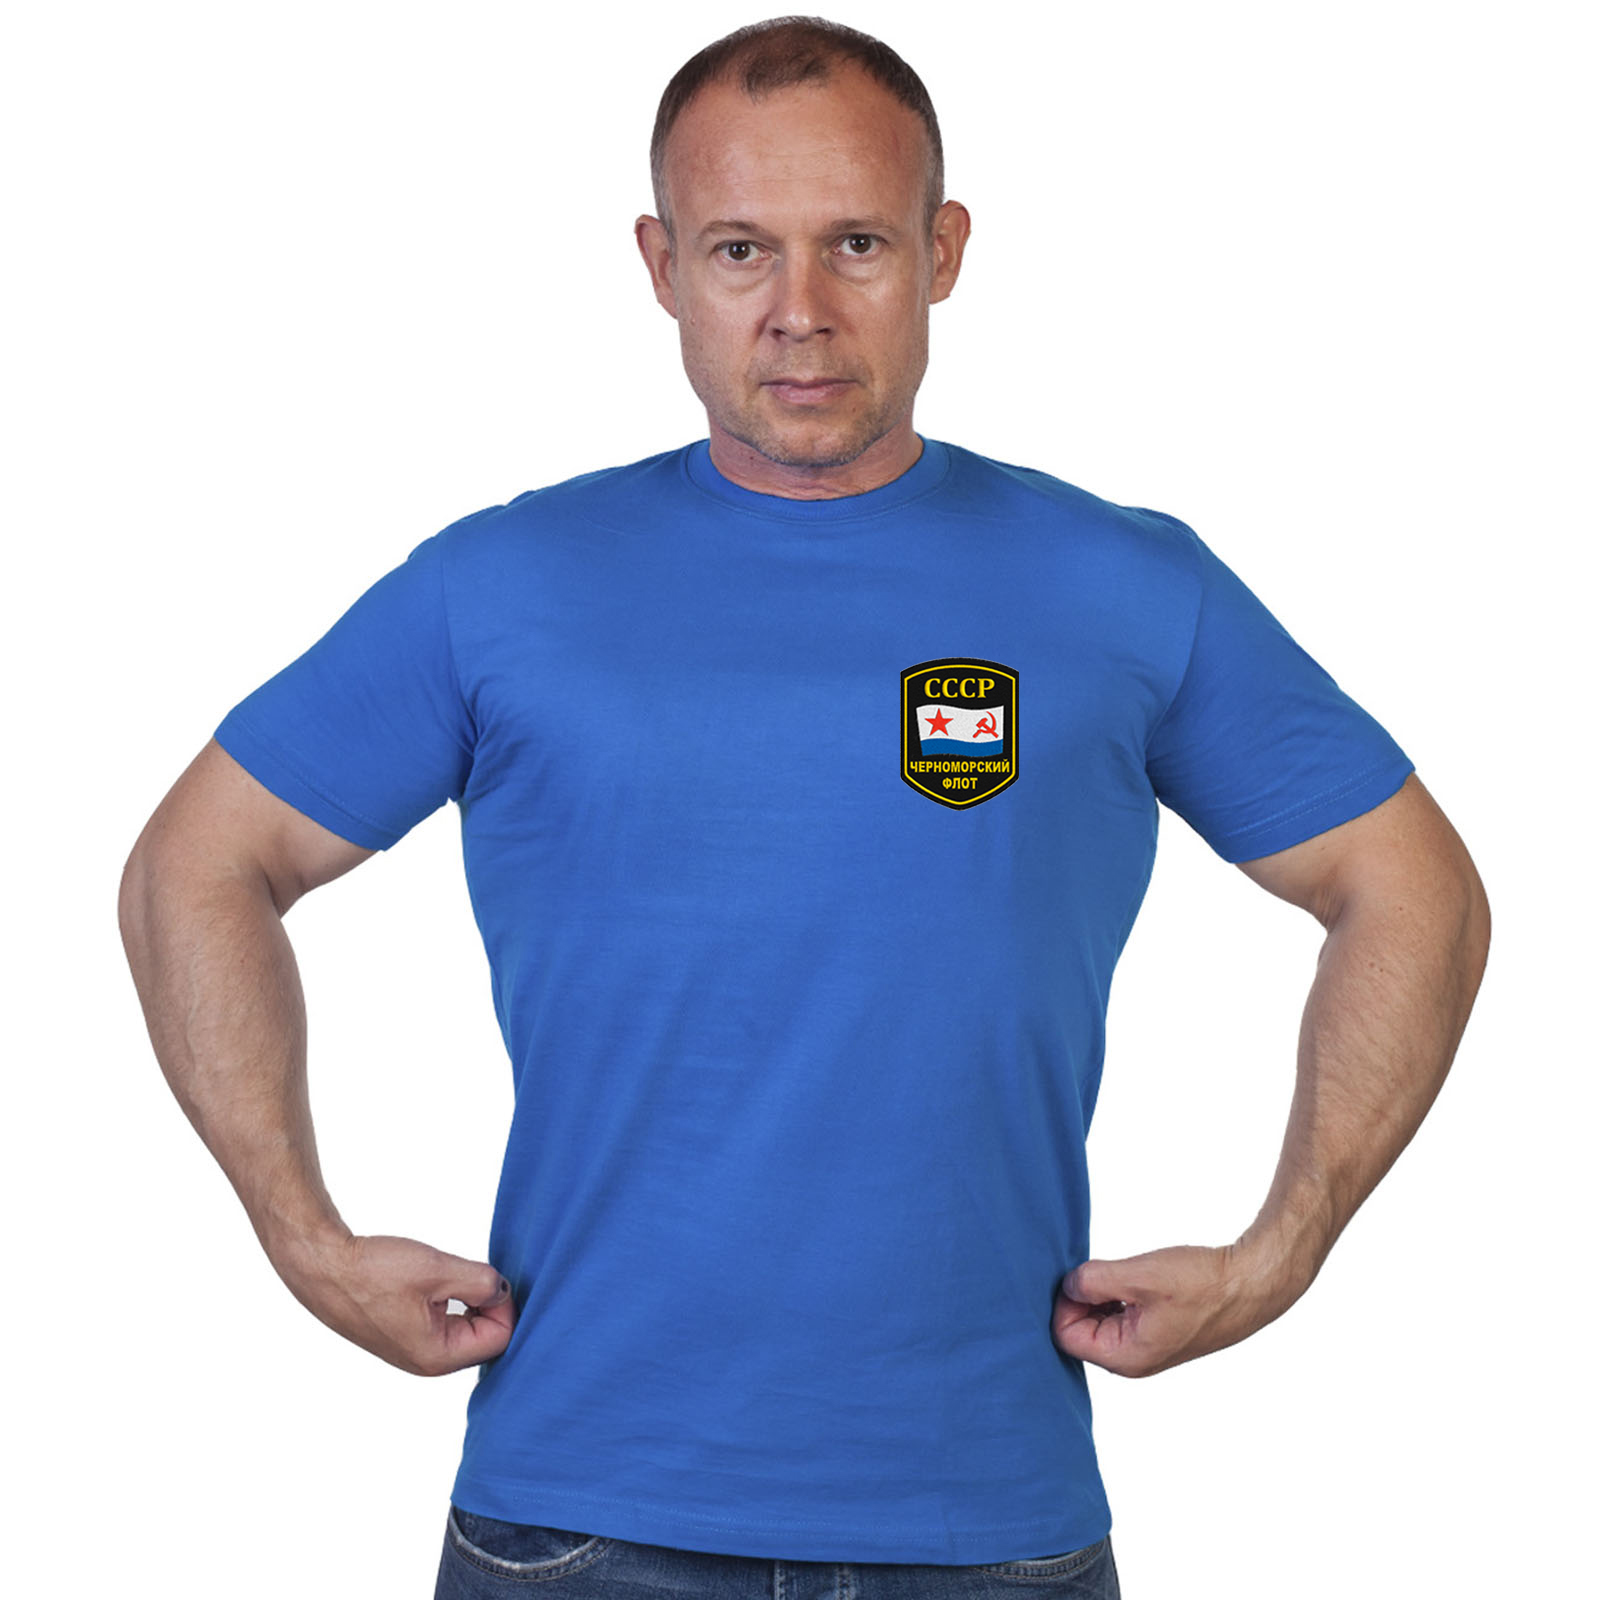 Васильковая футболка с шевроном Черноморского флота СССР